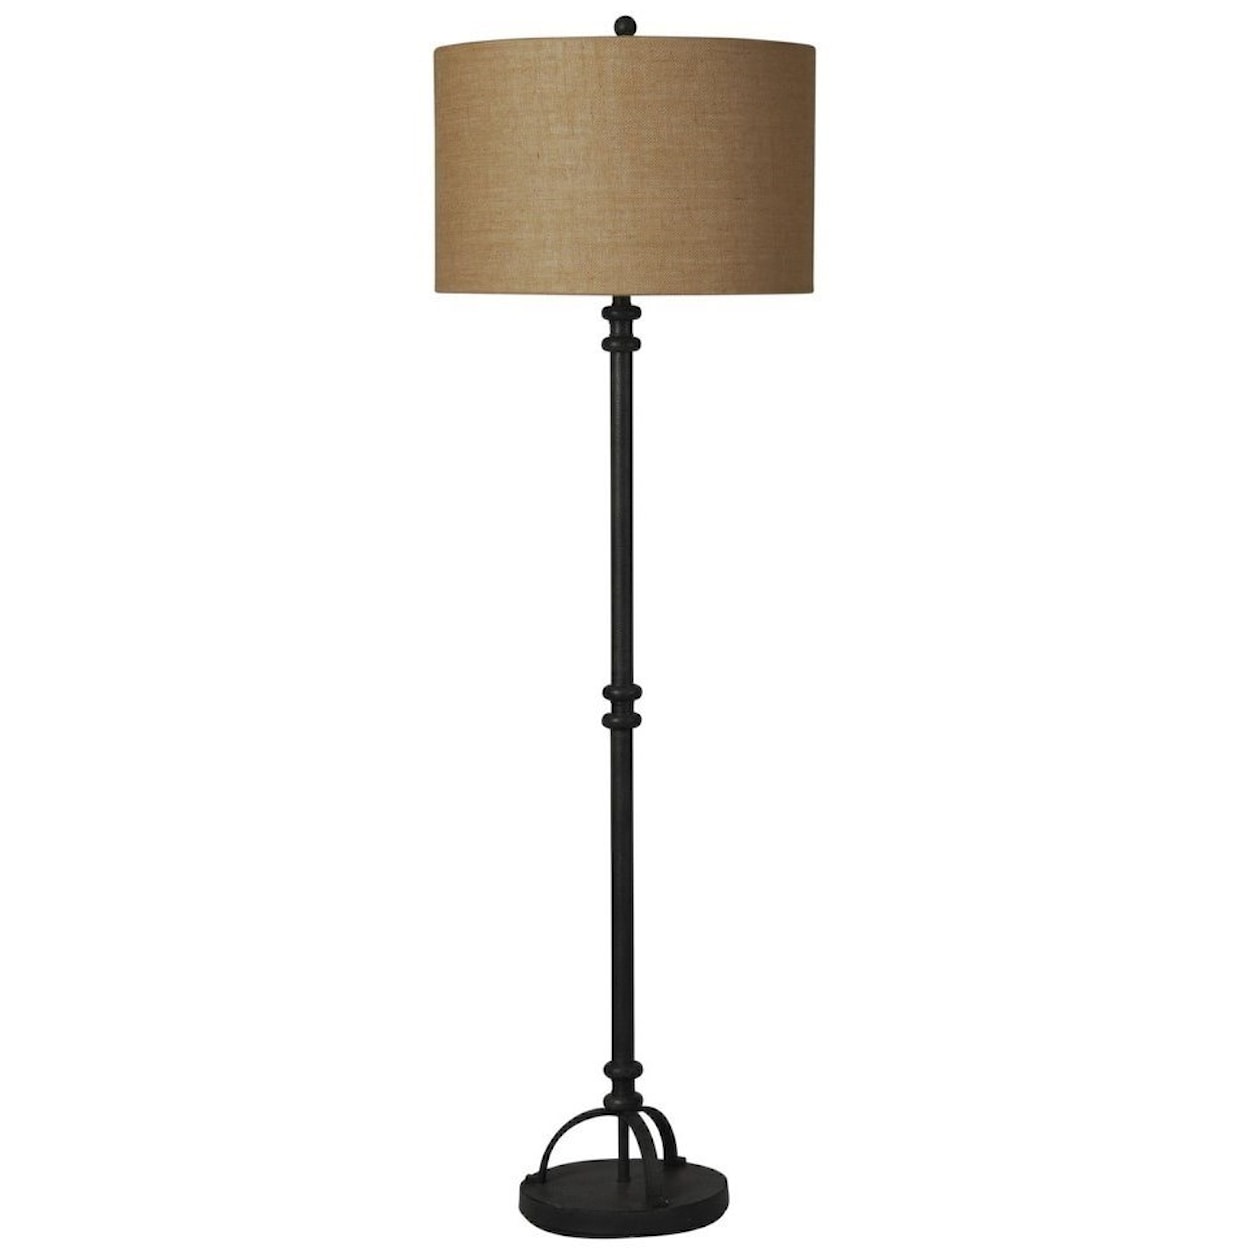 StyleCraft Lamps Industrial Bronze Floor Lamp